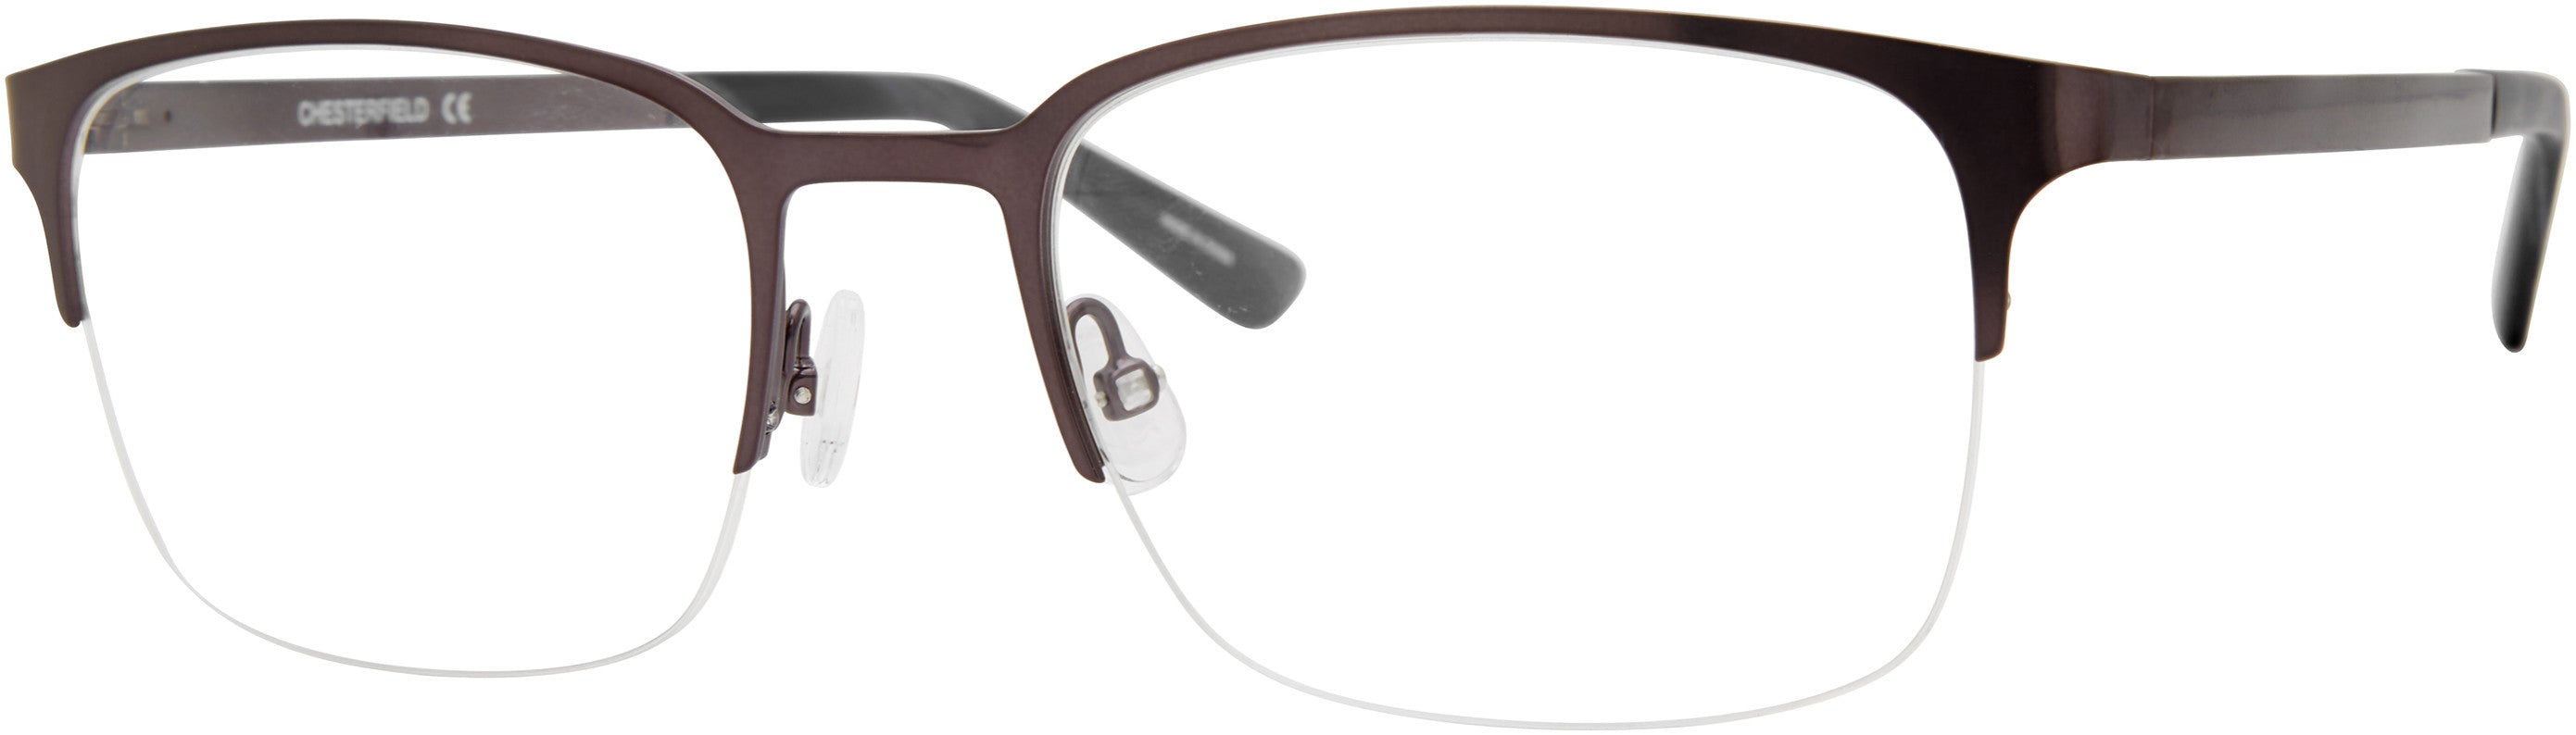  Chesterfield 86XL Rectangular Eyeglasses 0FRE-0FRE  Matte Gray (00 Demo Lens)